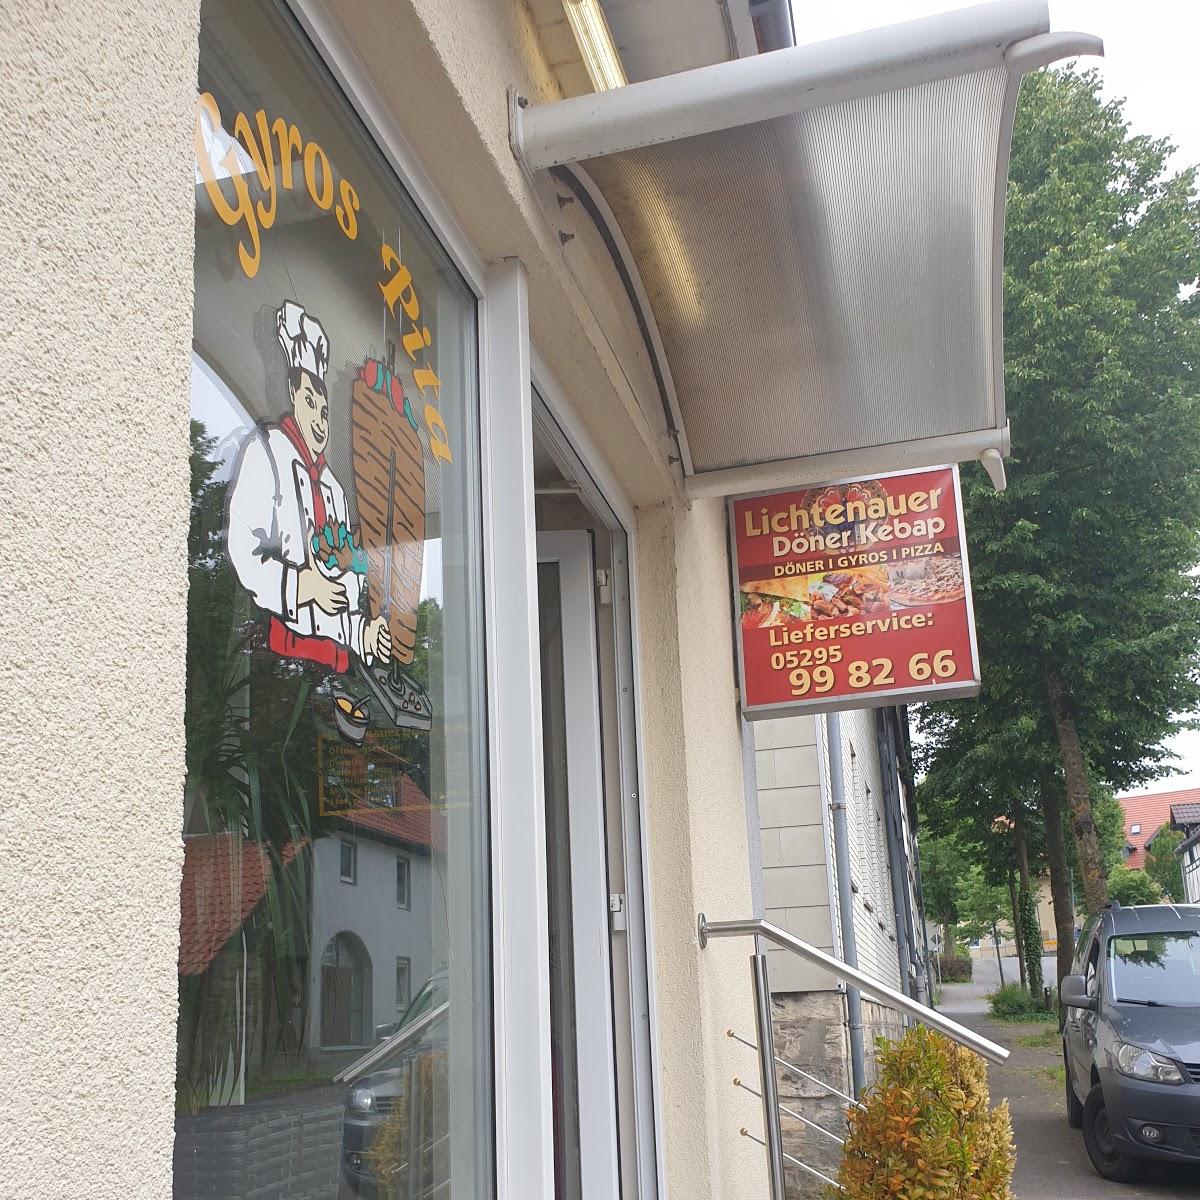 Restaurant "er Döner Kebab" in  Lichtenau